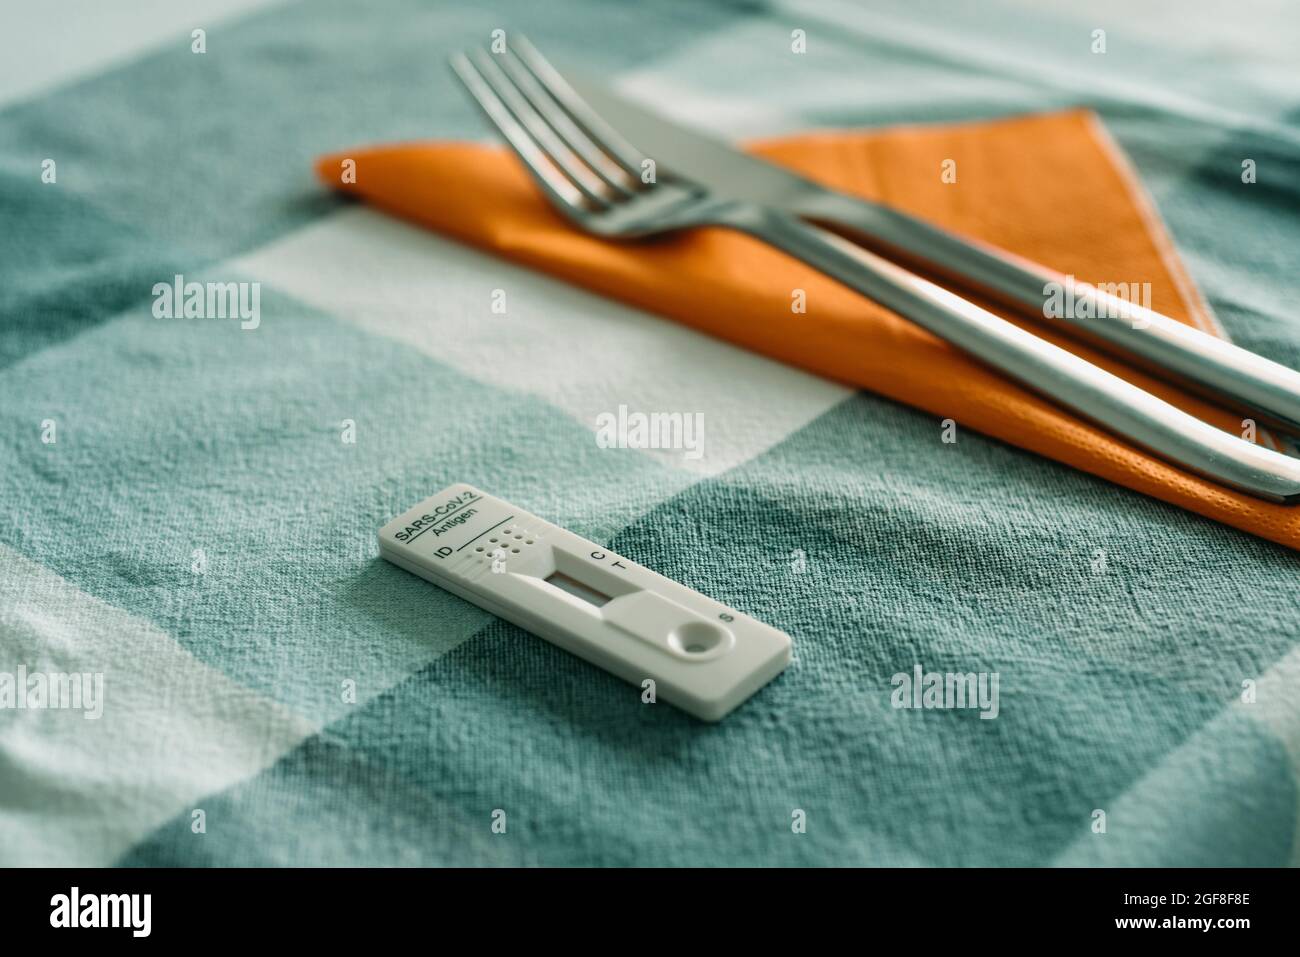 primo piano di un dispositivo di test diagnostico dell'antigene covid-19 su un tavolo per il pranzo, accanto ad un tovagliolo di tessuto arancione, una forchetta e un coltello Foto Stock